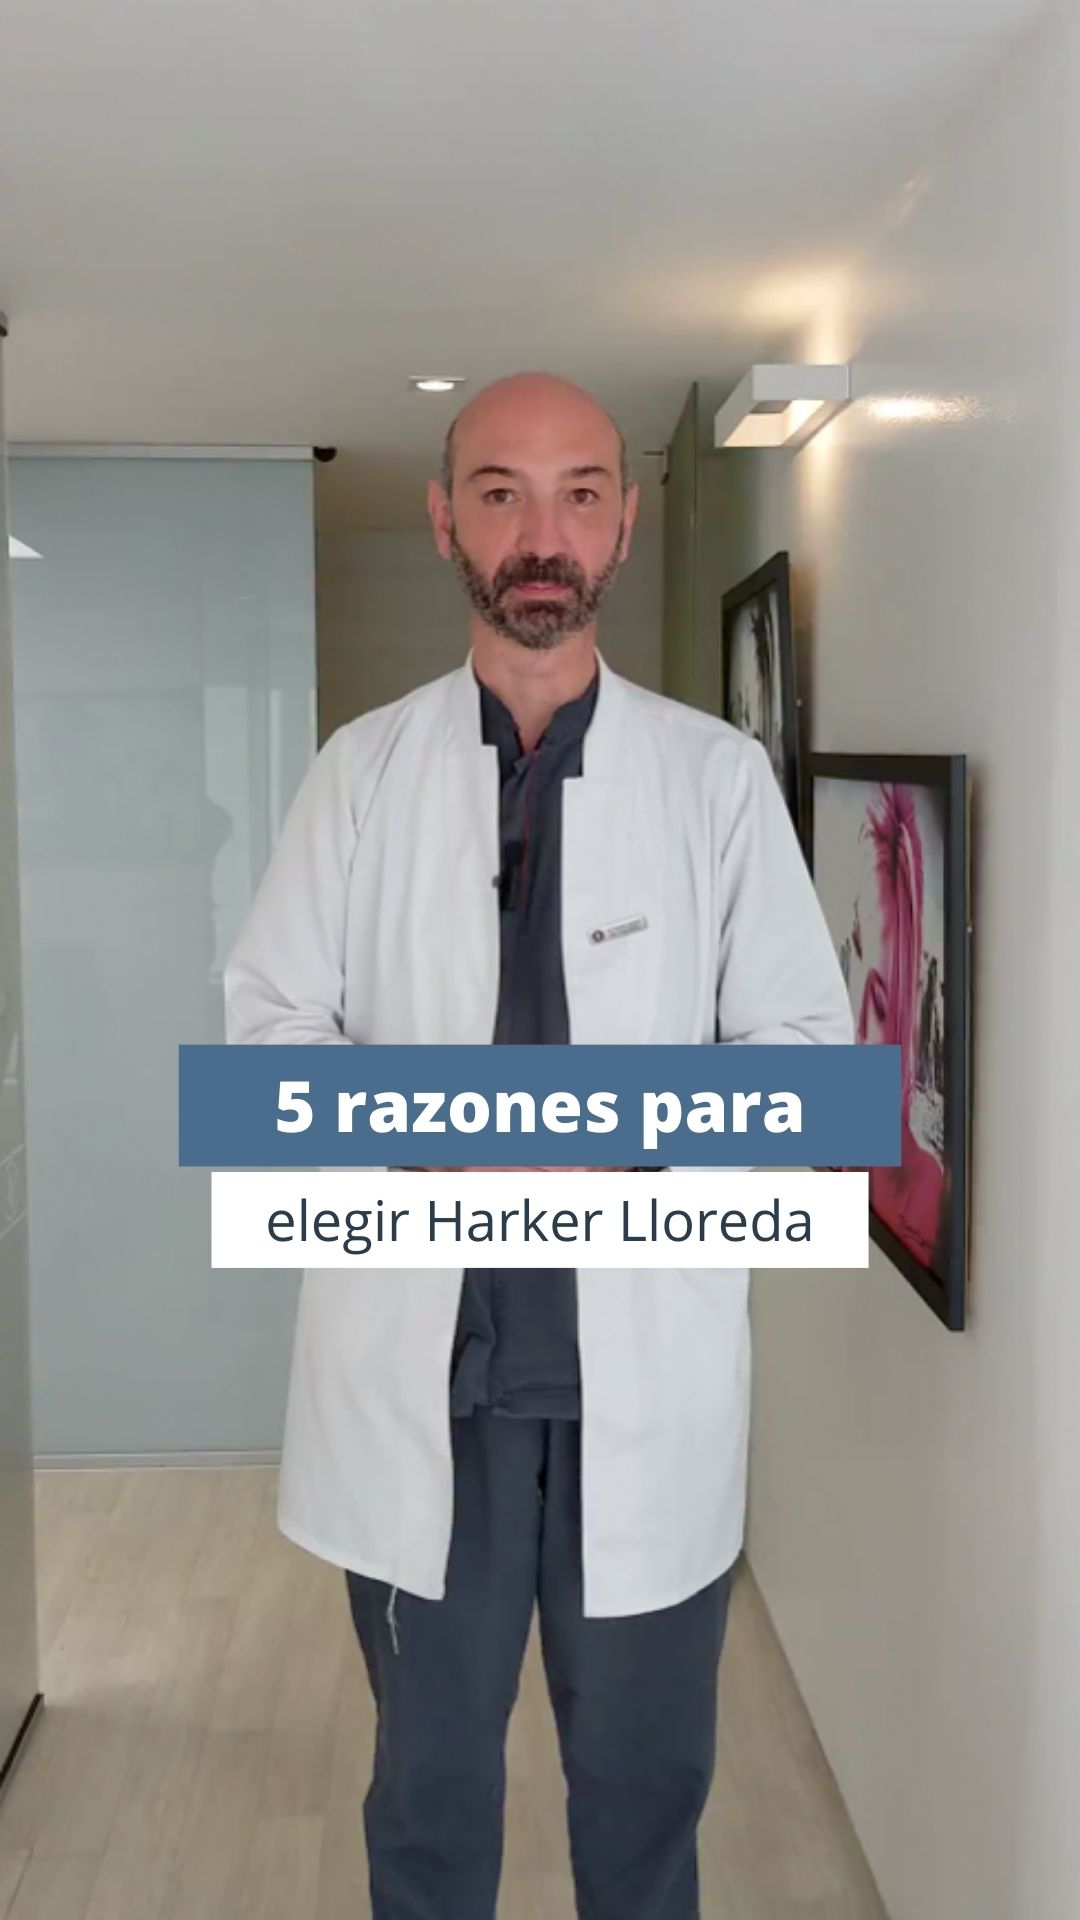 5 razones para elegir Harker / Lloreda